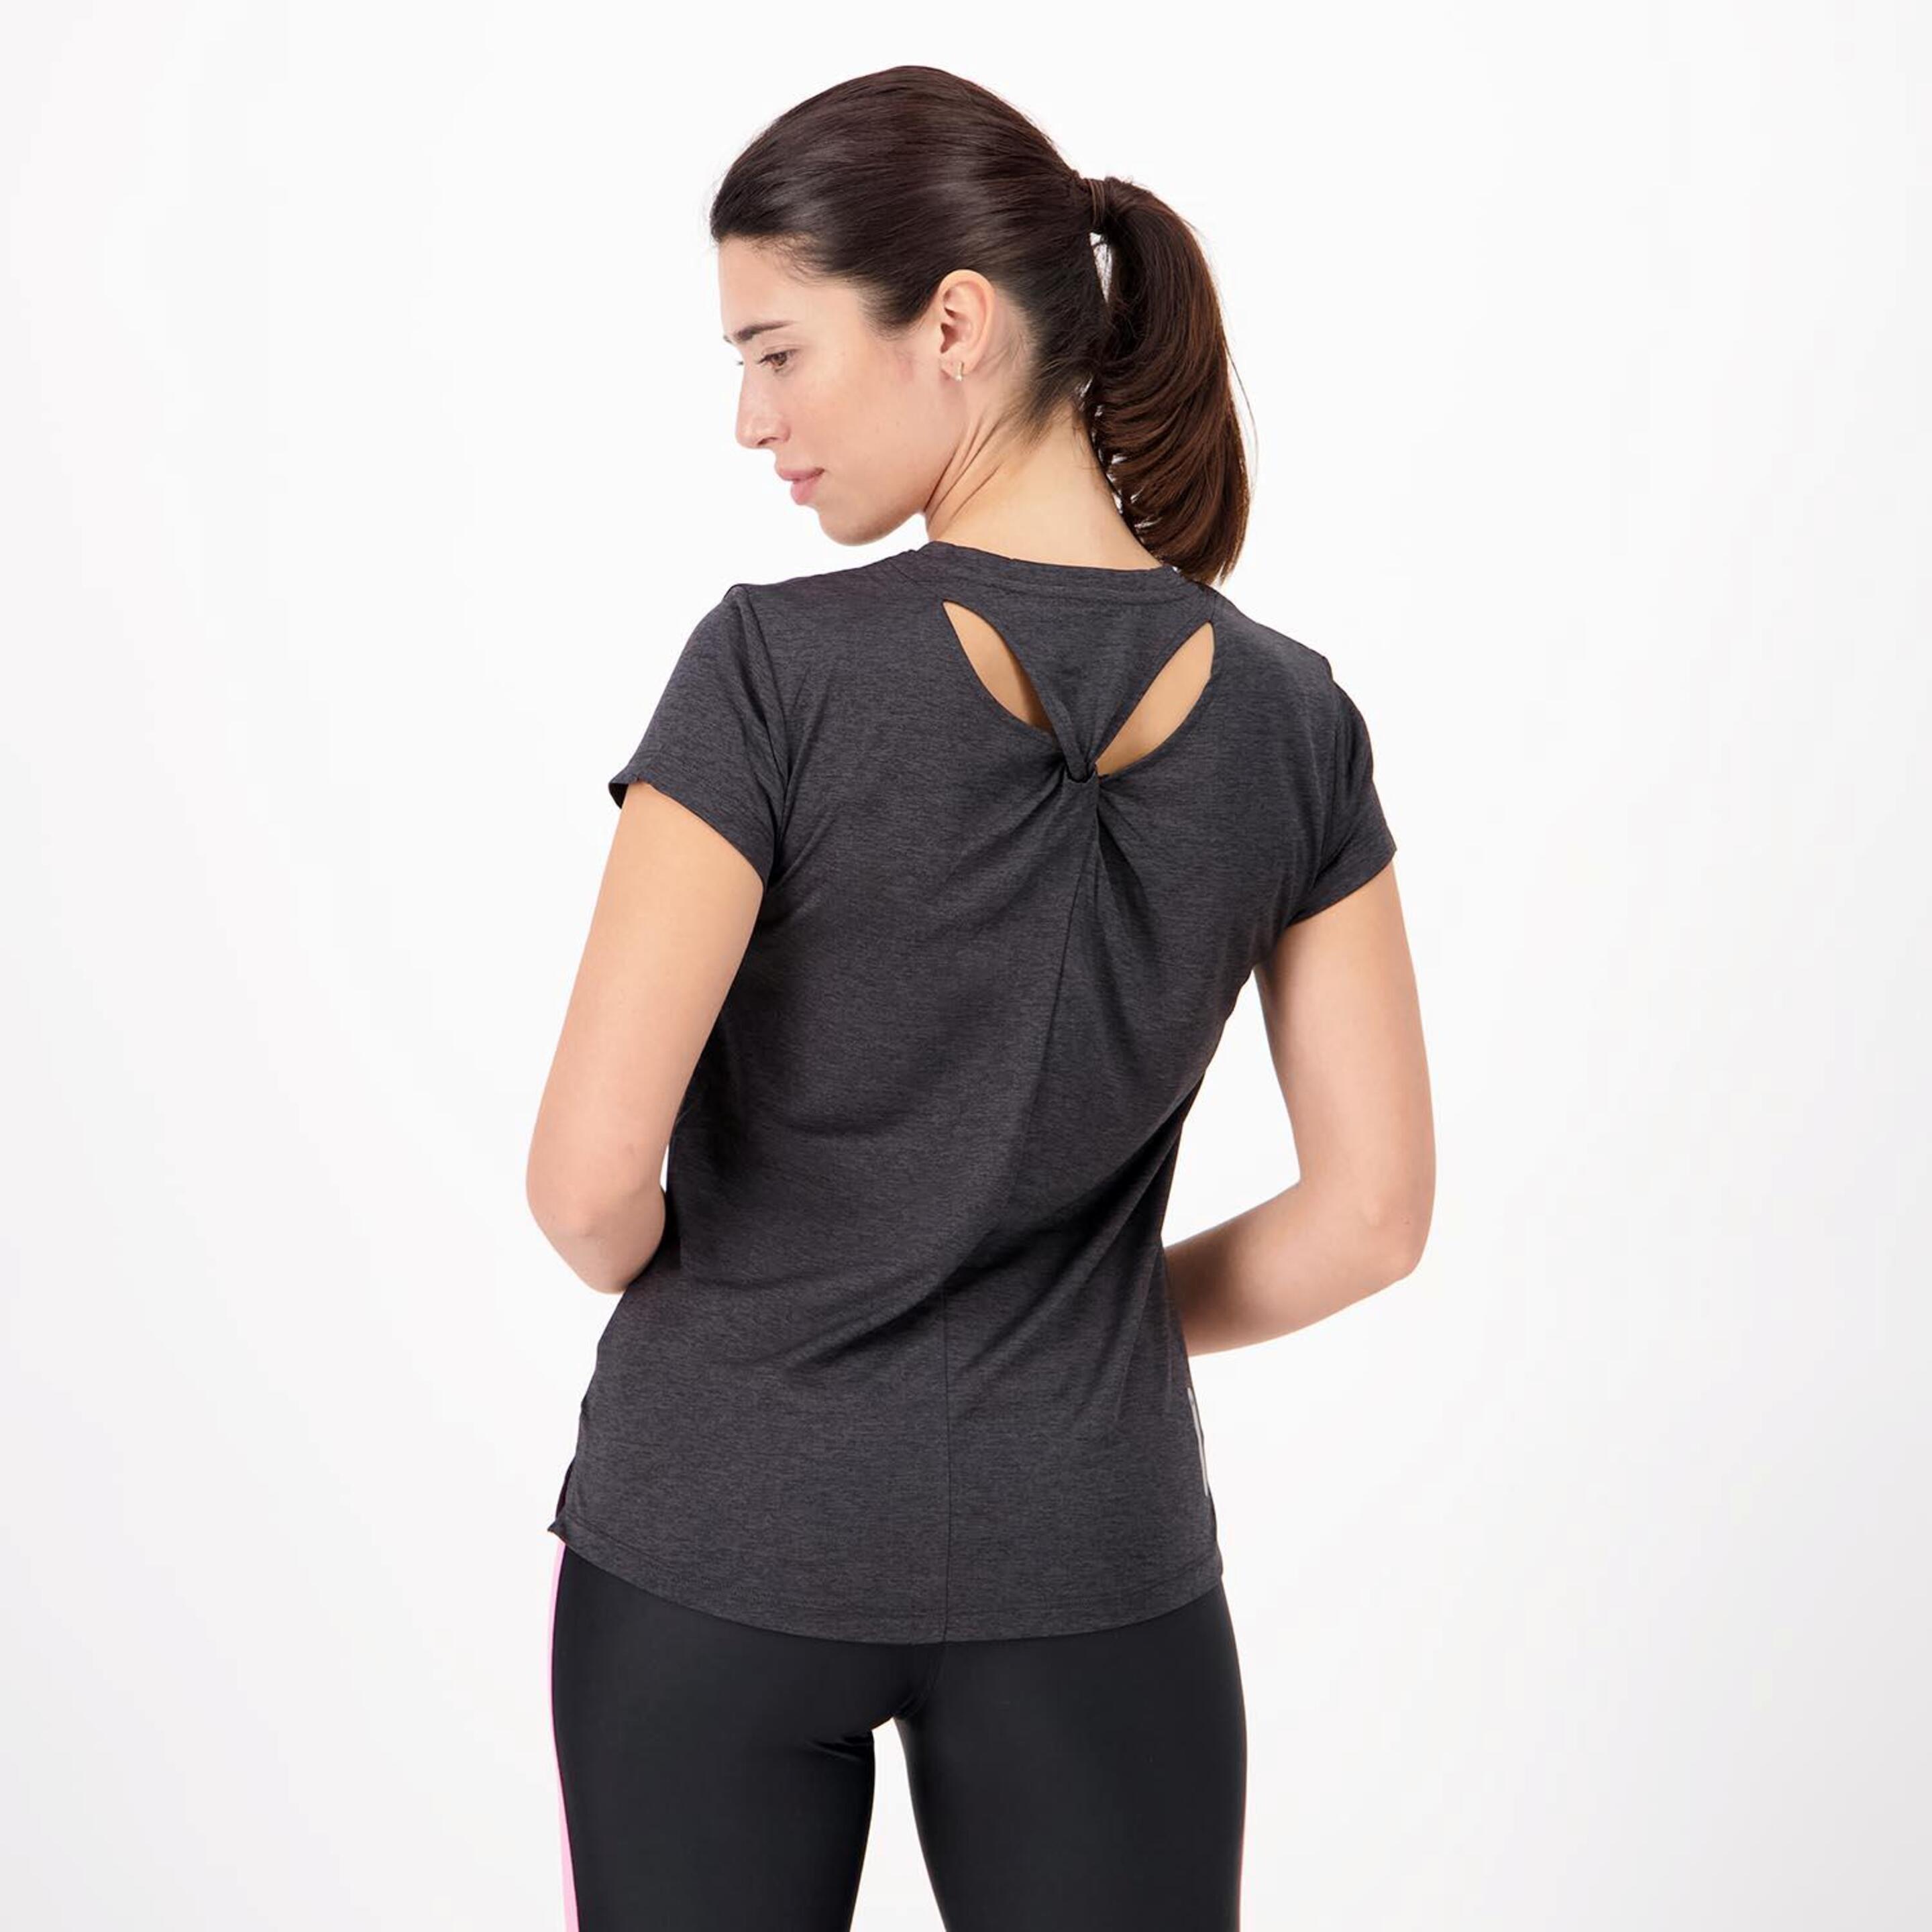 Ipso Combi - Negro - Camiseta Running Mujer